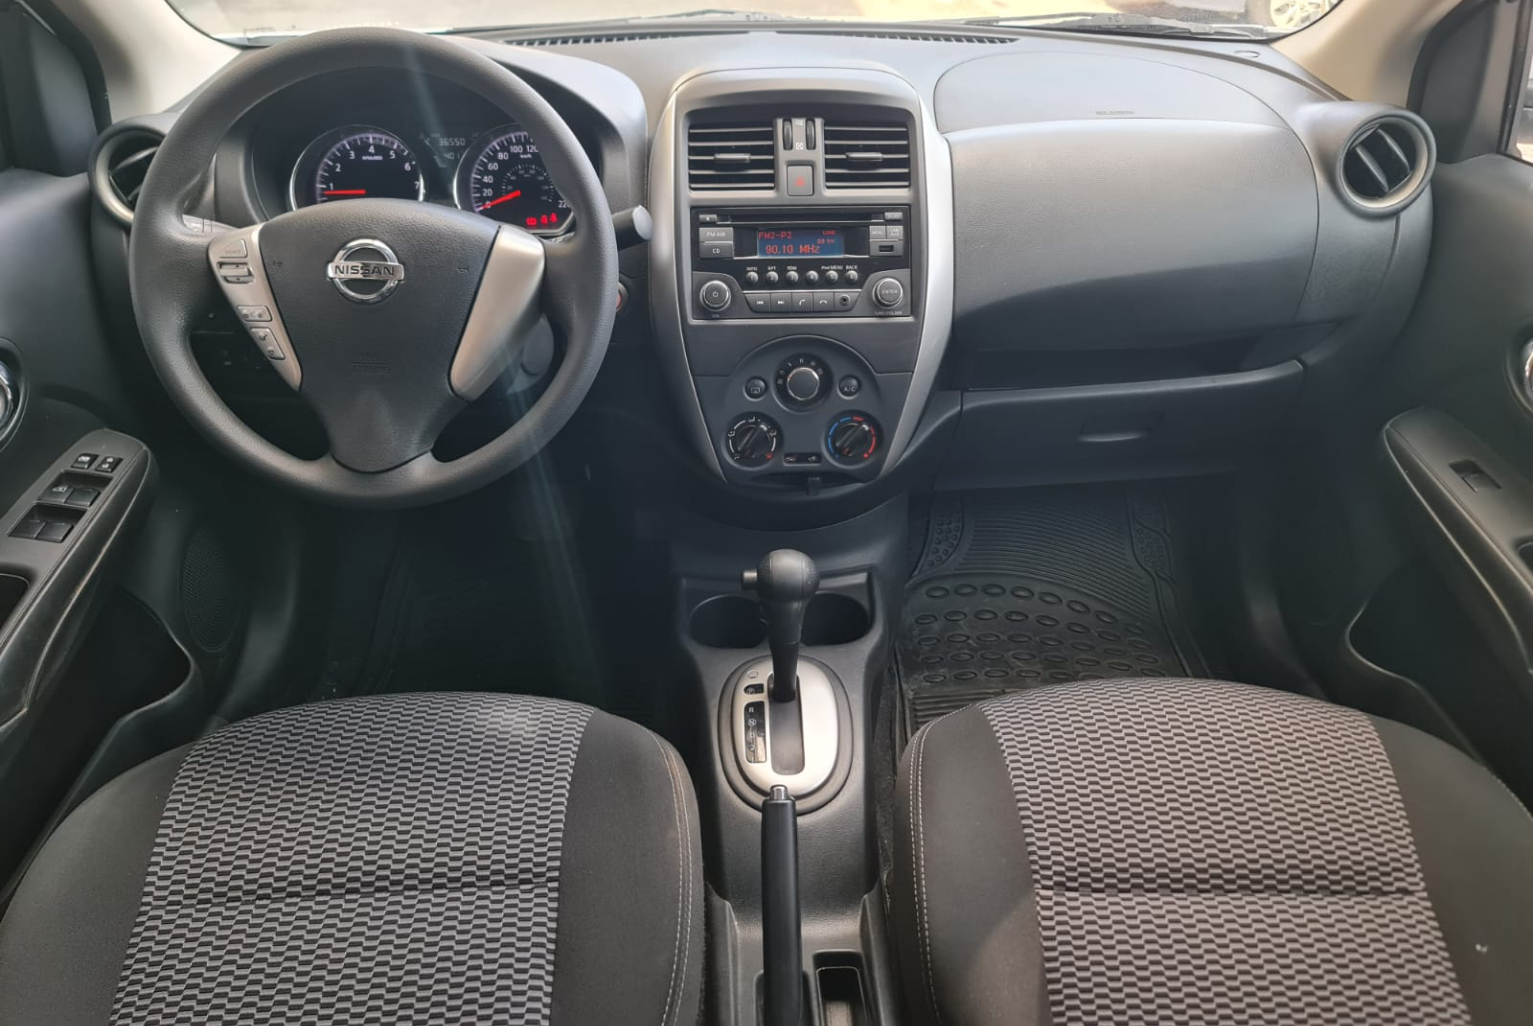 Nissan Versa 2018 Automático color Blanco, Imagen #9